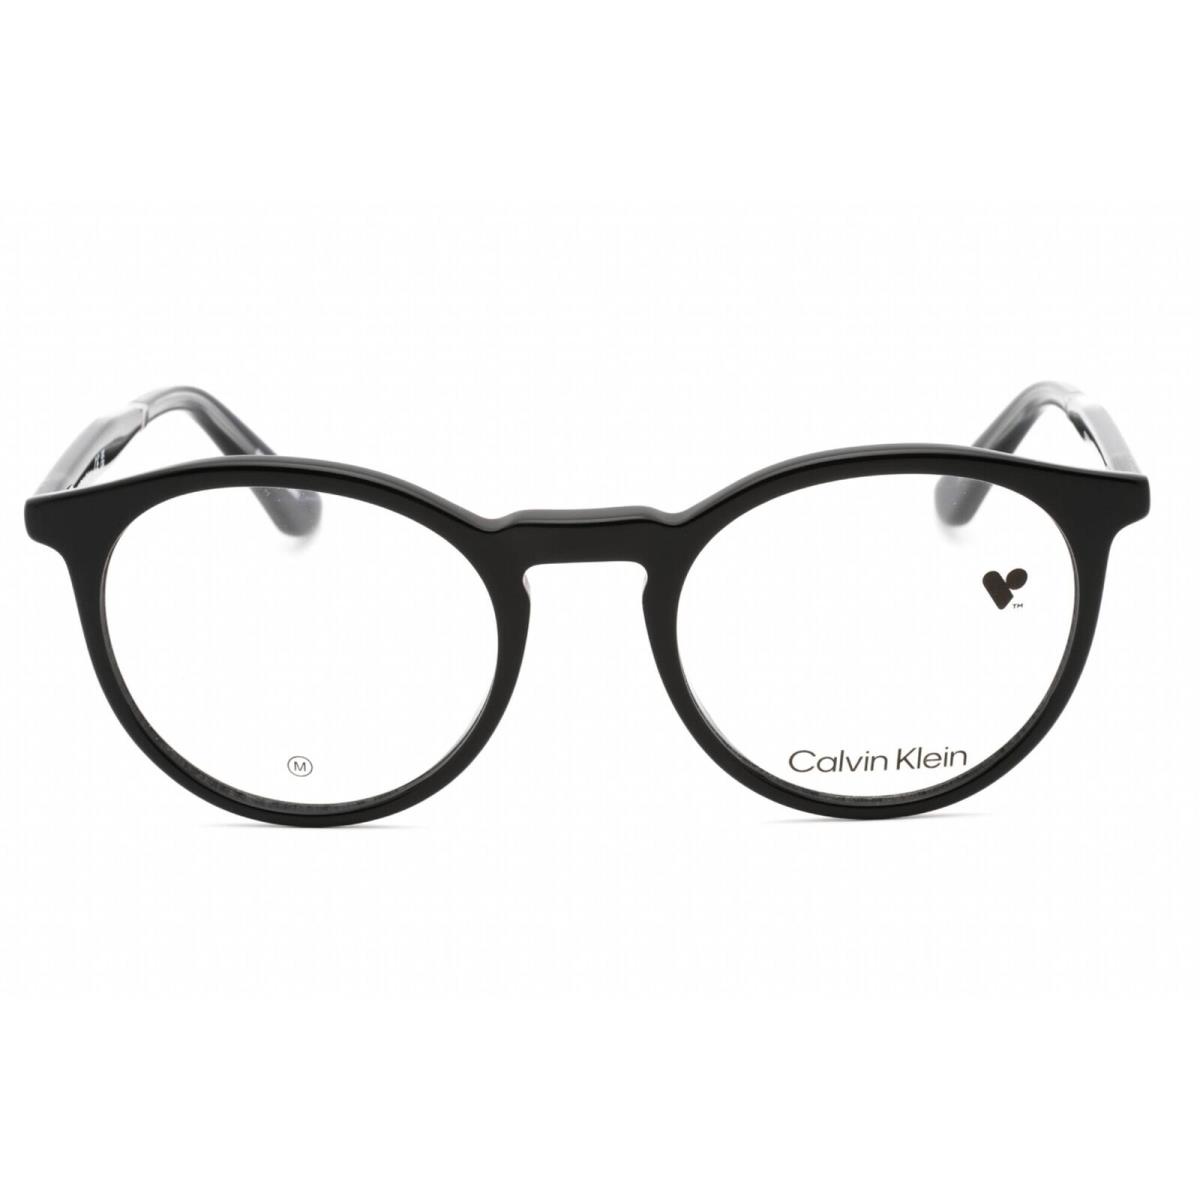 Calvin Klein Unisex Eyeglasses Black Round Plastic Frame Clear Lens CK23515 001